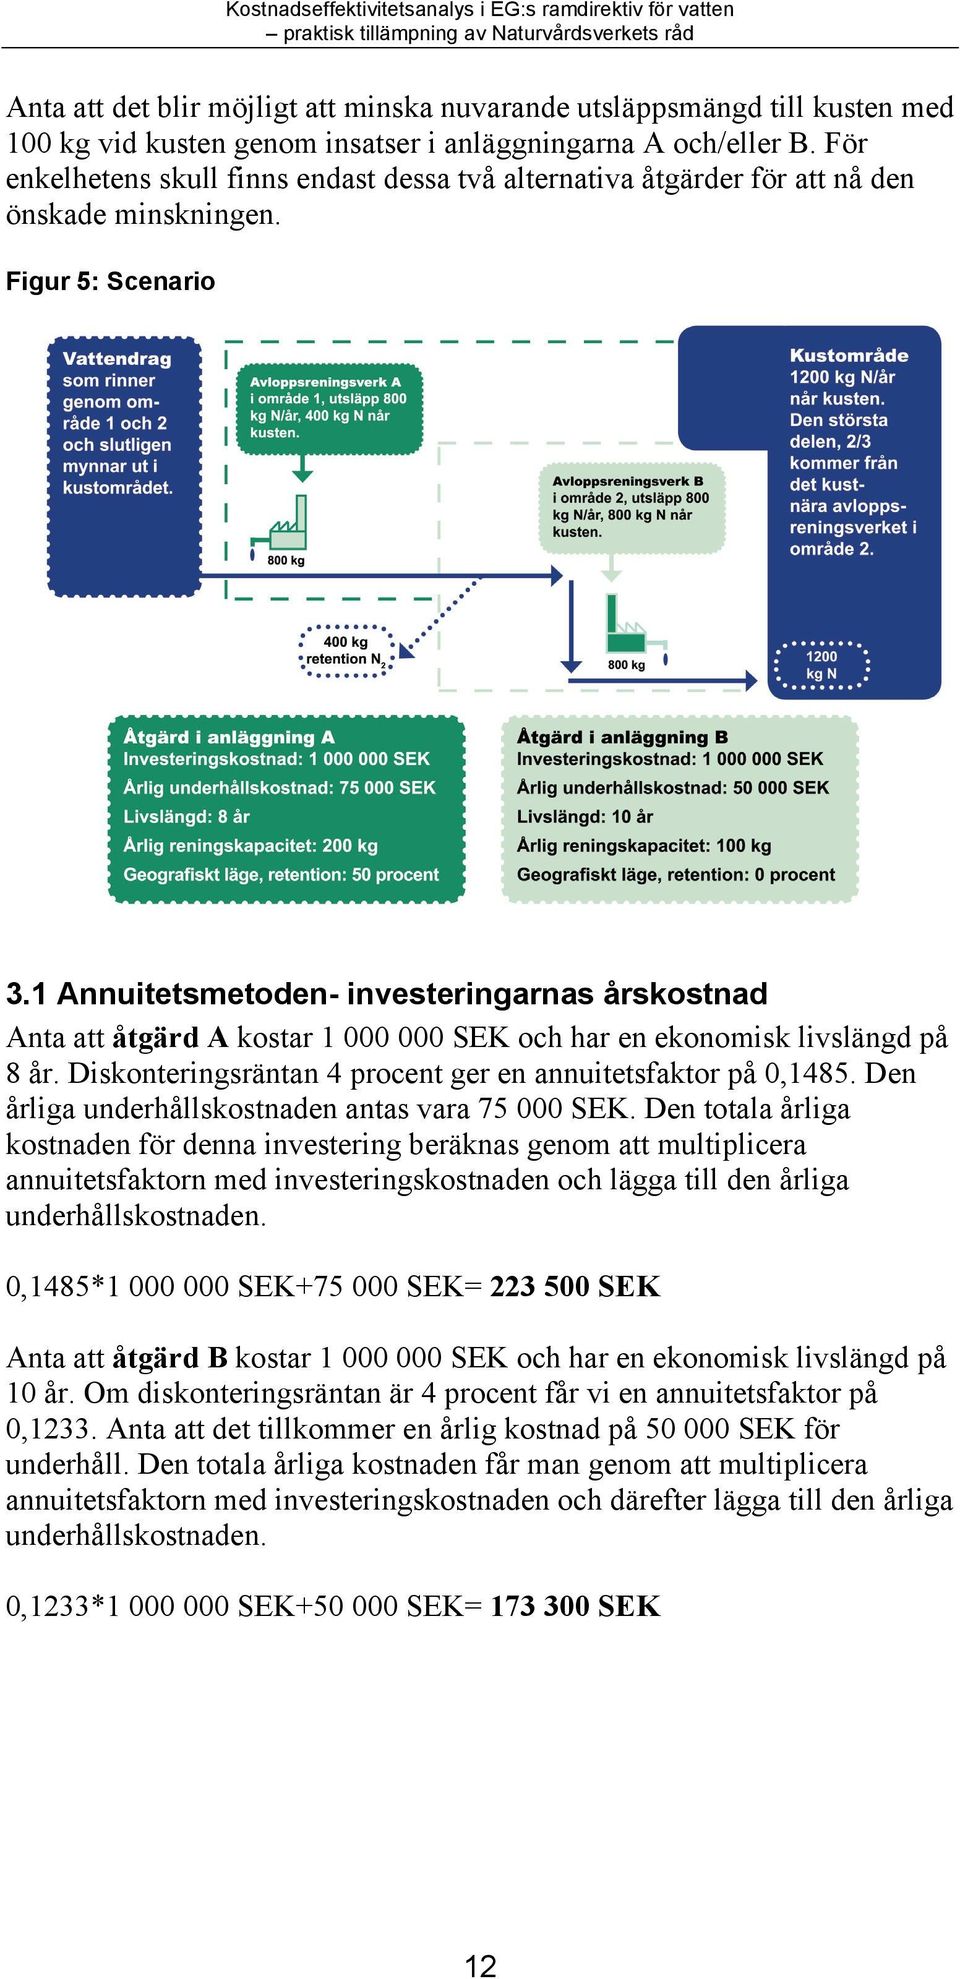 1 Annuitetsmetoden- investeringarnas årskostnad Anta att åtgärd A kostar 1 000 000 SEK och har en ekonomisk livslängd på 8 år. Diskonteringsräntan 4 procent ger en annuitetsfaktor på 0,1485.